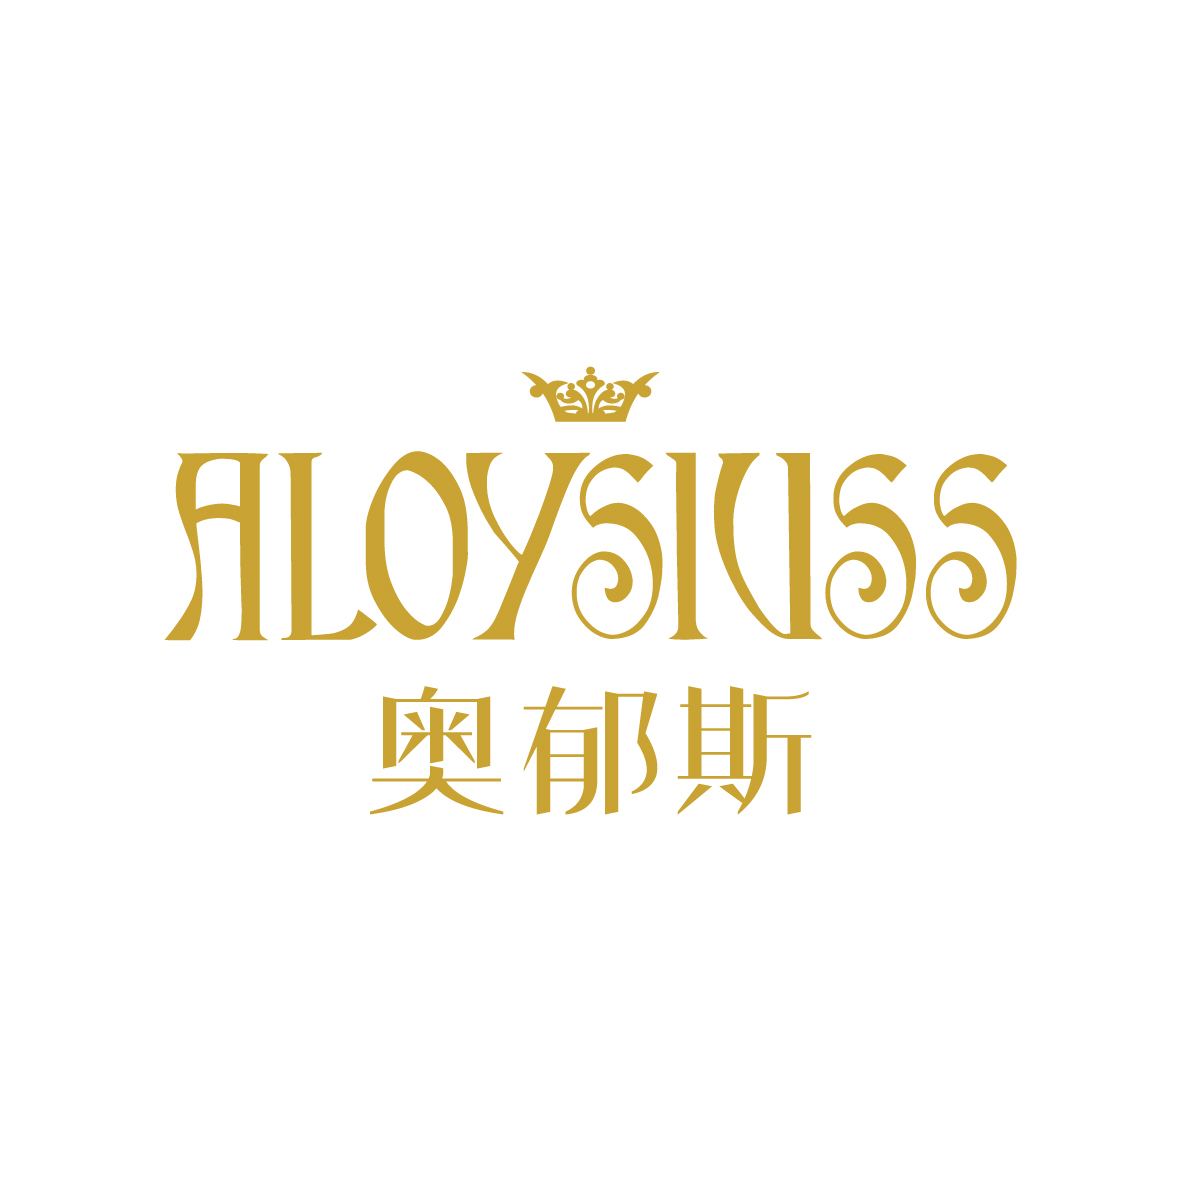 广州品翰文化发展有限公司商标奥郁斯 ALOYSIUSS（03类）多少钱？